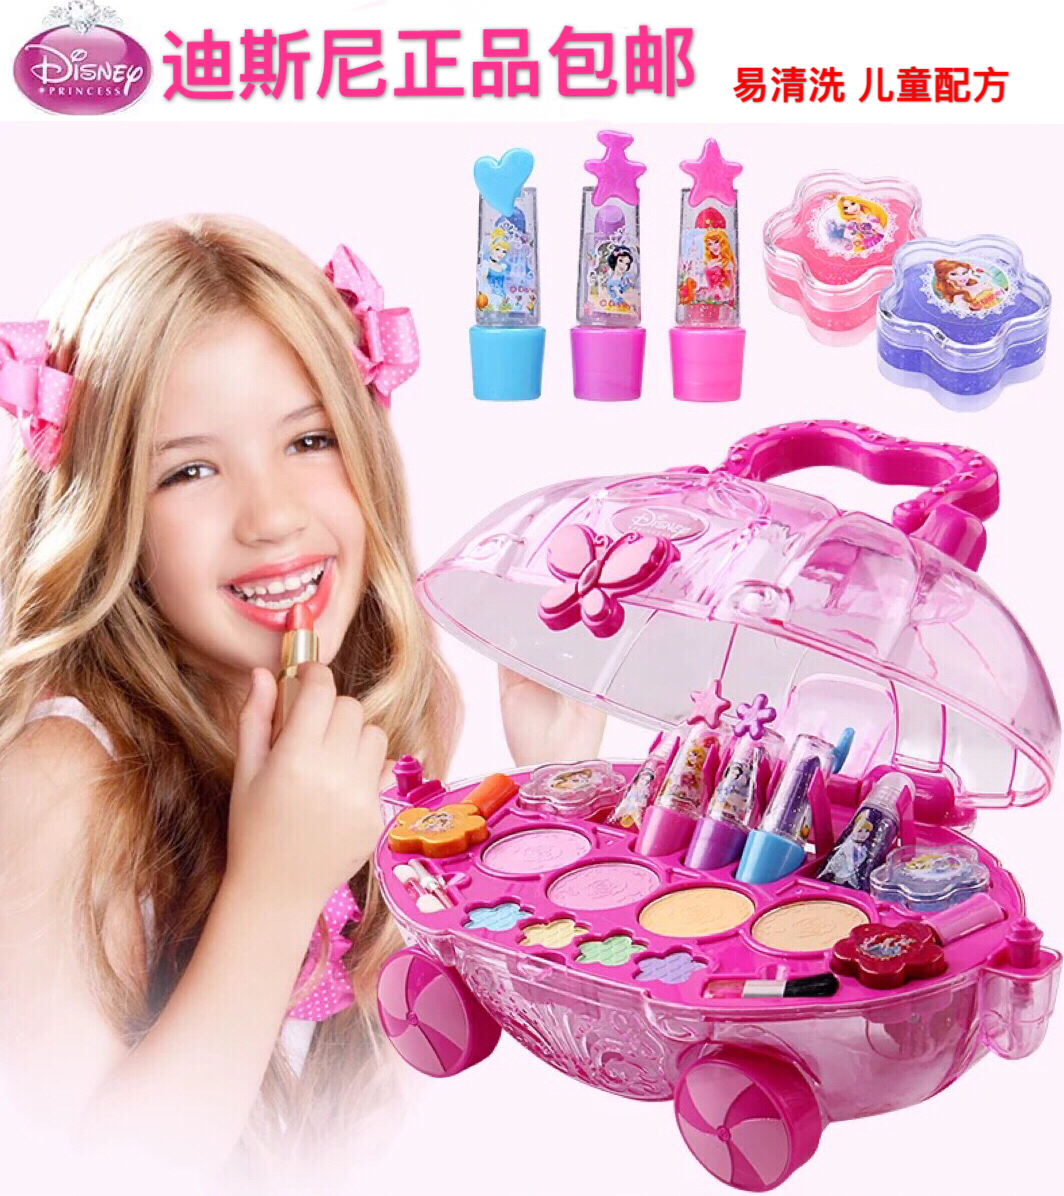 正品迪斯尼化妝盒兒童彩妝套裝安全無毒女孩過家玩具女童生日禮物